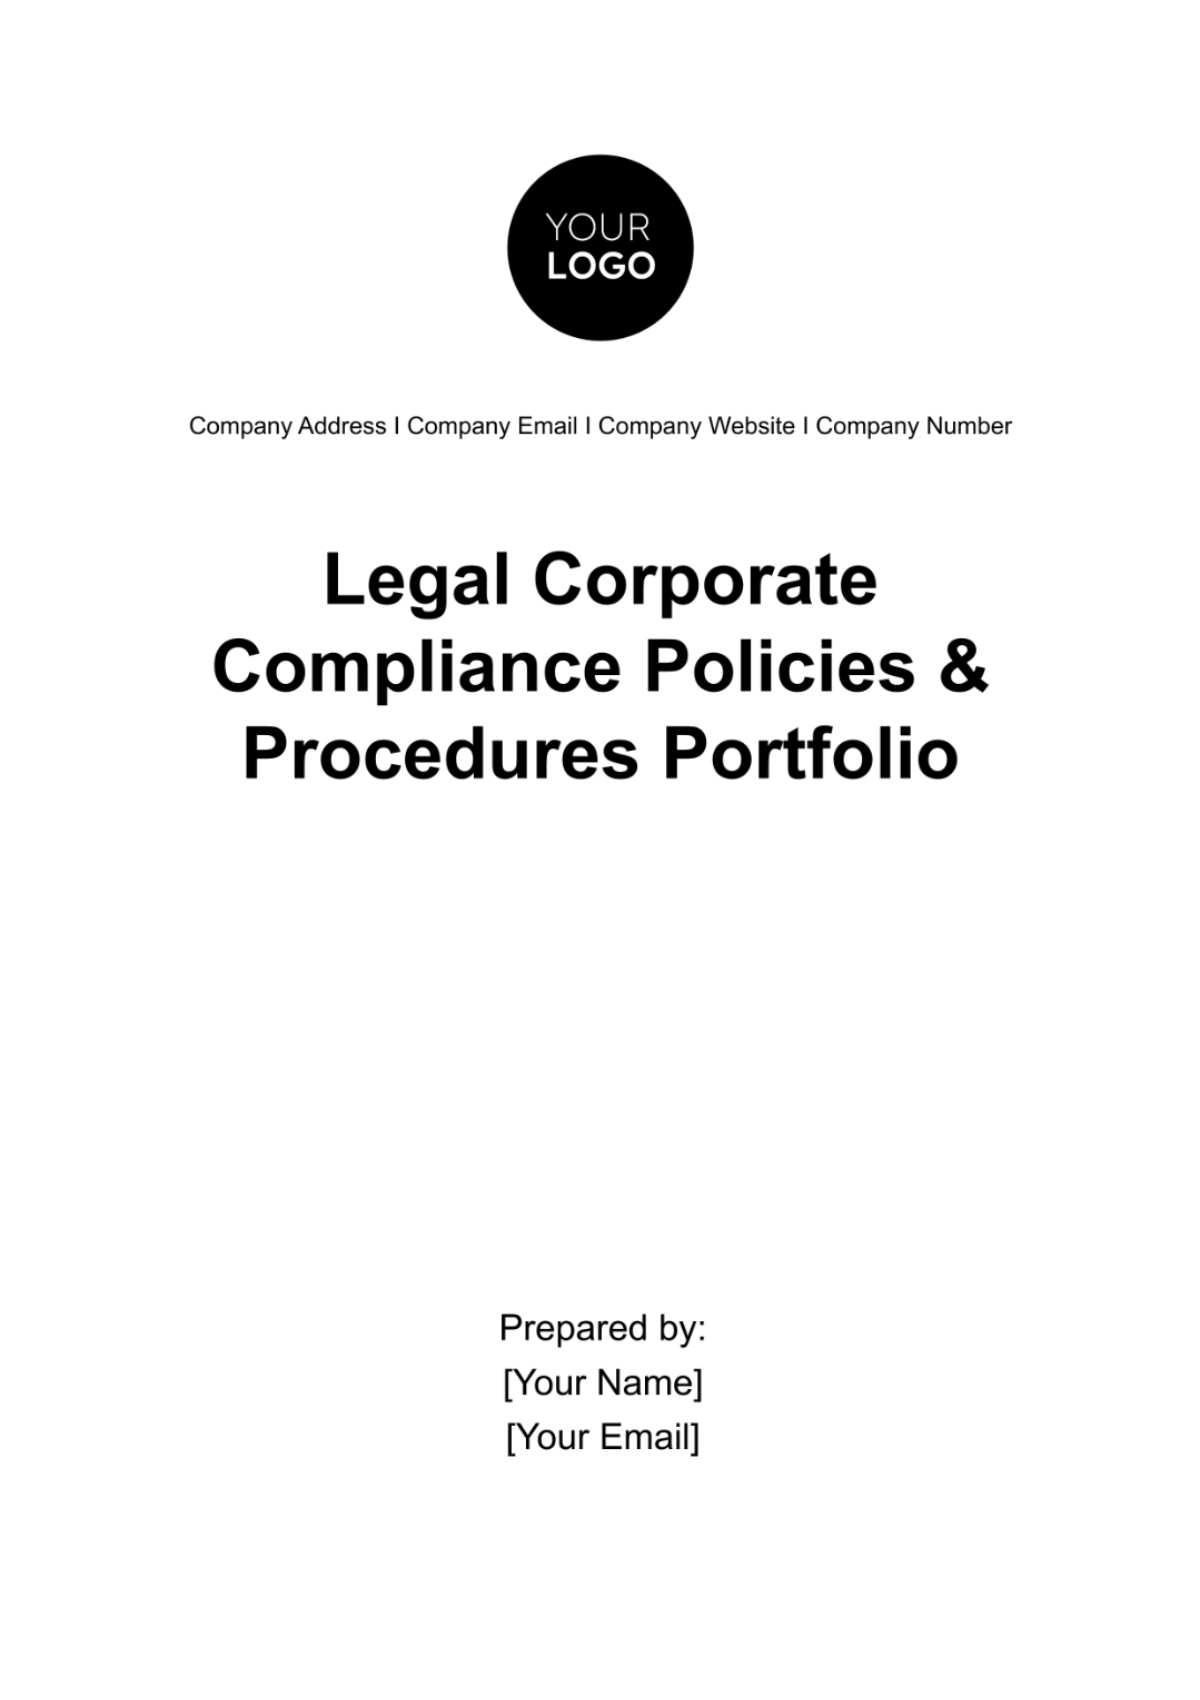 Legal Corporate Compliance Policies & Procedures Portfolio Template